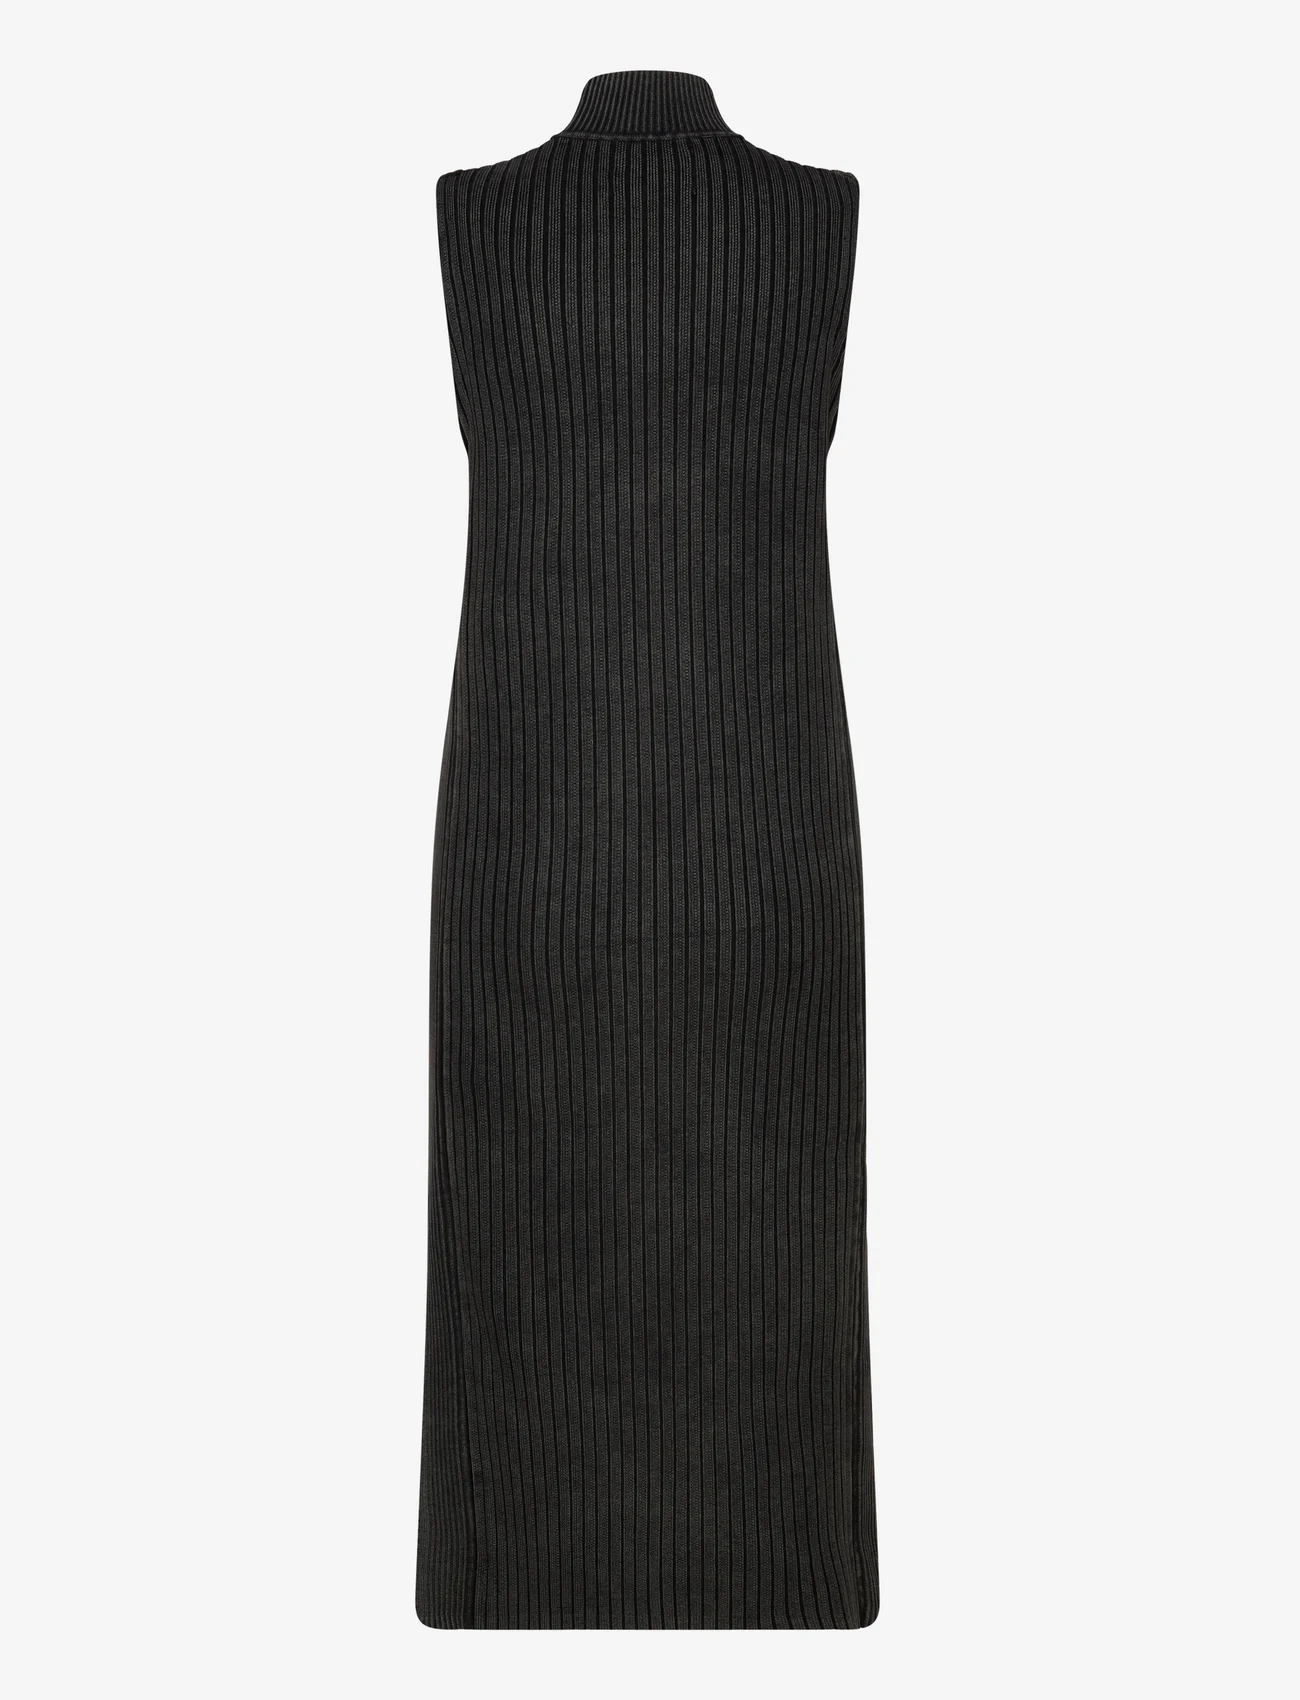 Calvin Klein Jeans - WASHED LONG SWEATER DRESS - strikkede kjoler - ck black - 1